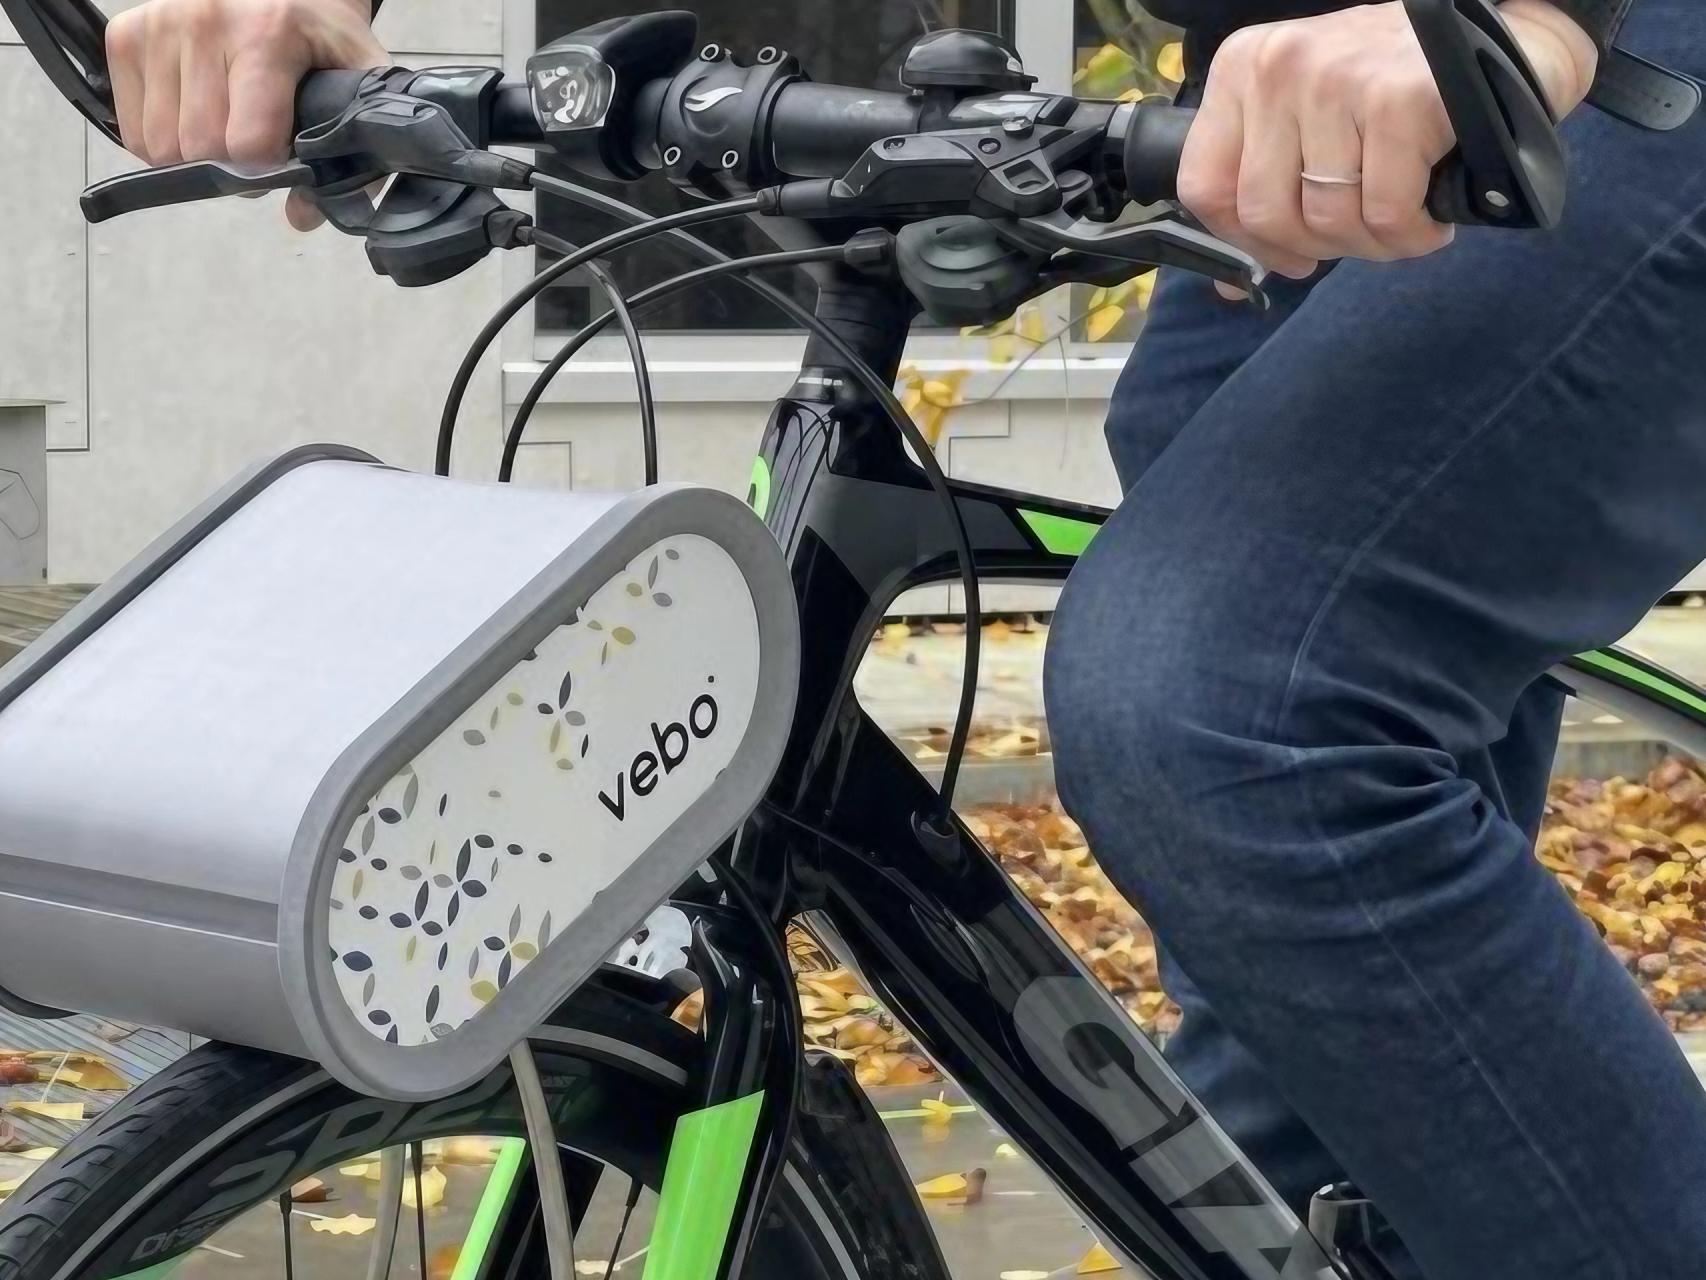 El revolucionario invento que cambiará las bicicletas eléctricas